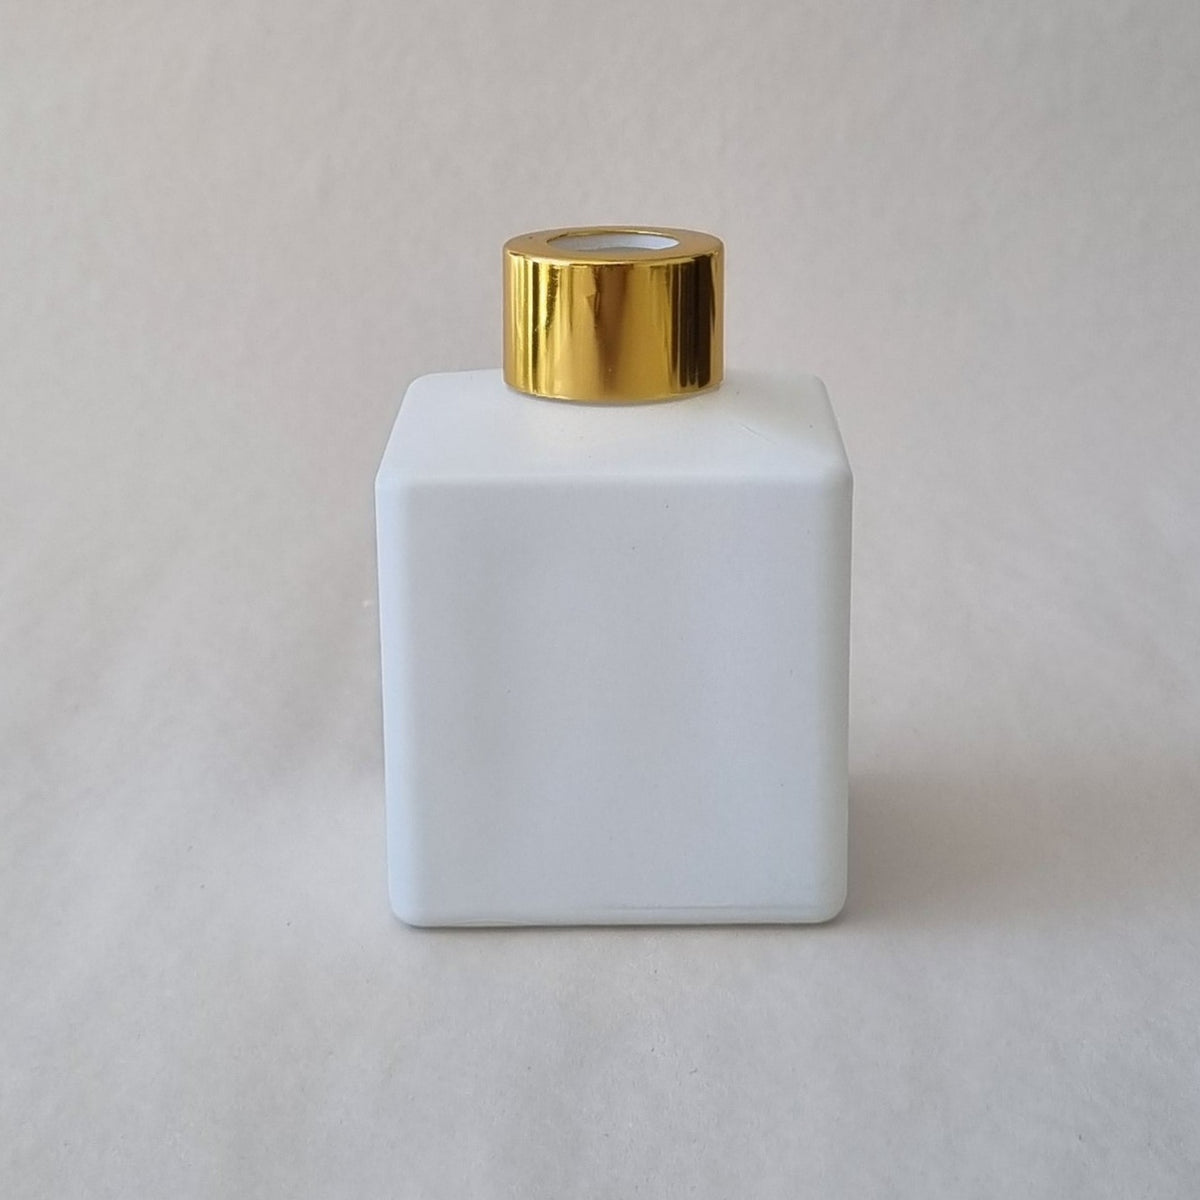 Diffuser Bottle - Square Matt White 150ml - Gold Lid-$3 each in box of 12